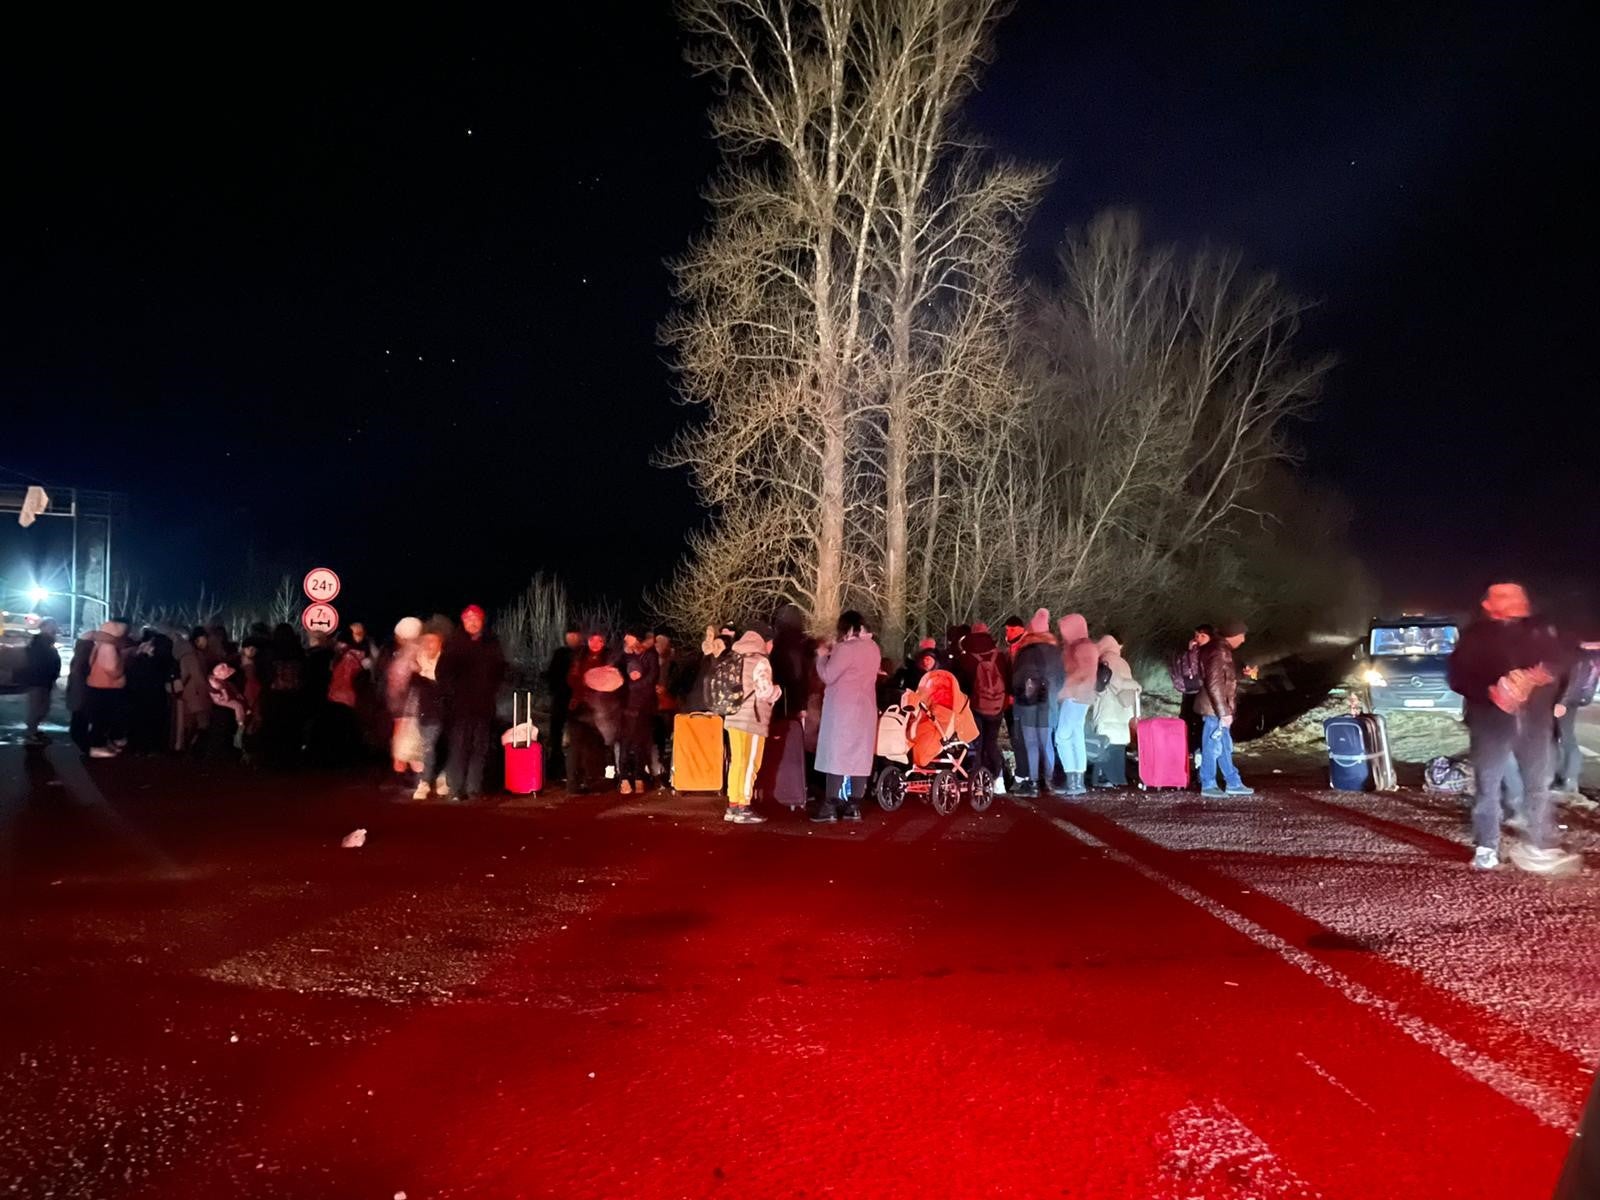 Des Ukrainiens regroupés à Rava-Ruska, dans l’ouest de l’Ukraine, attendaient avant de pouvoir franchir la frontière avec la Pologne, dans la nuit du 25 février 2022. Les lueurs rougeâtres provenaient d’un feu de camp qui avait été allumé pour réchauffer le groupe.